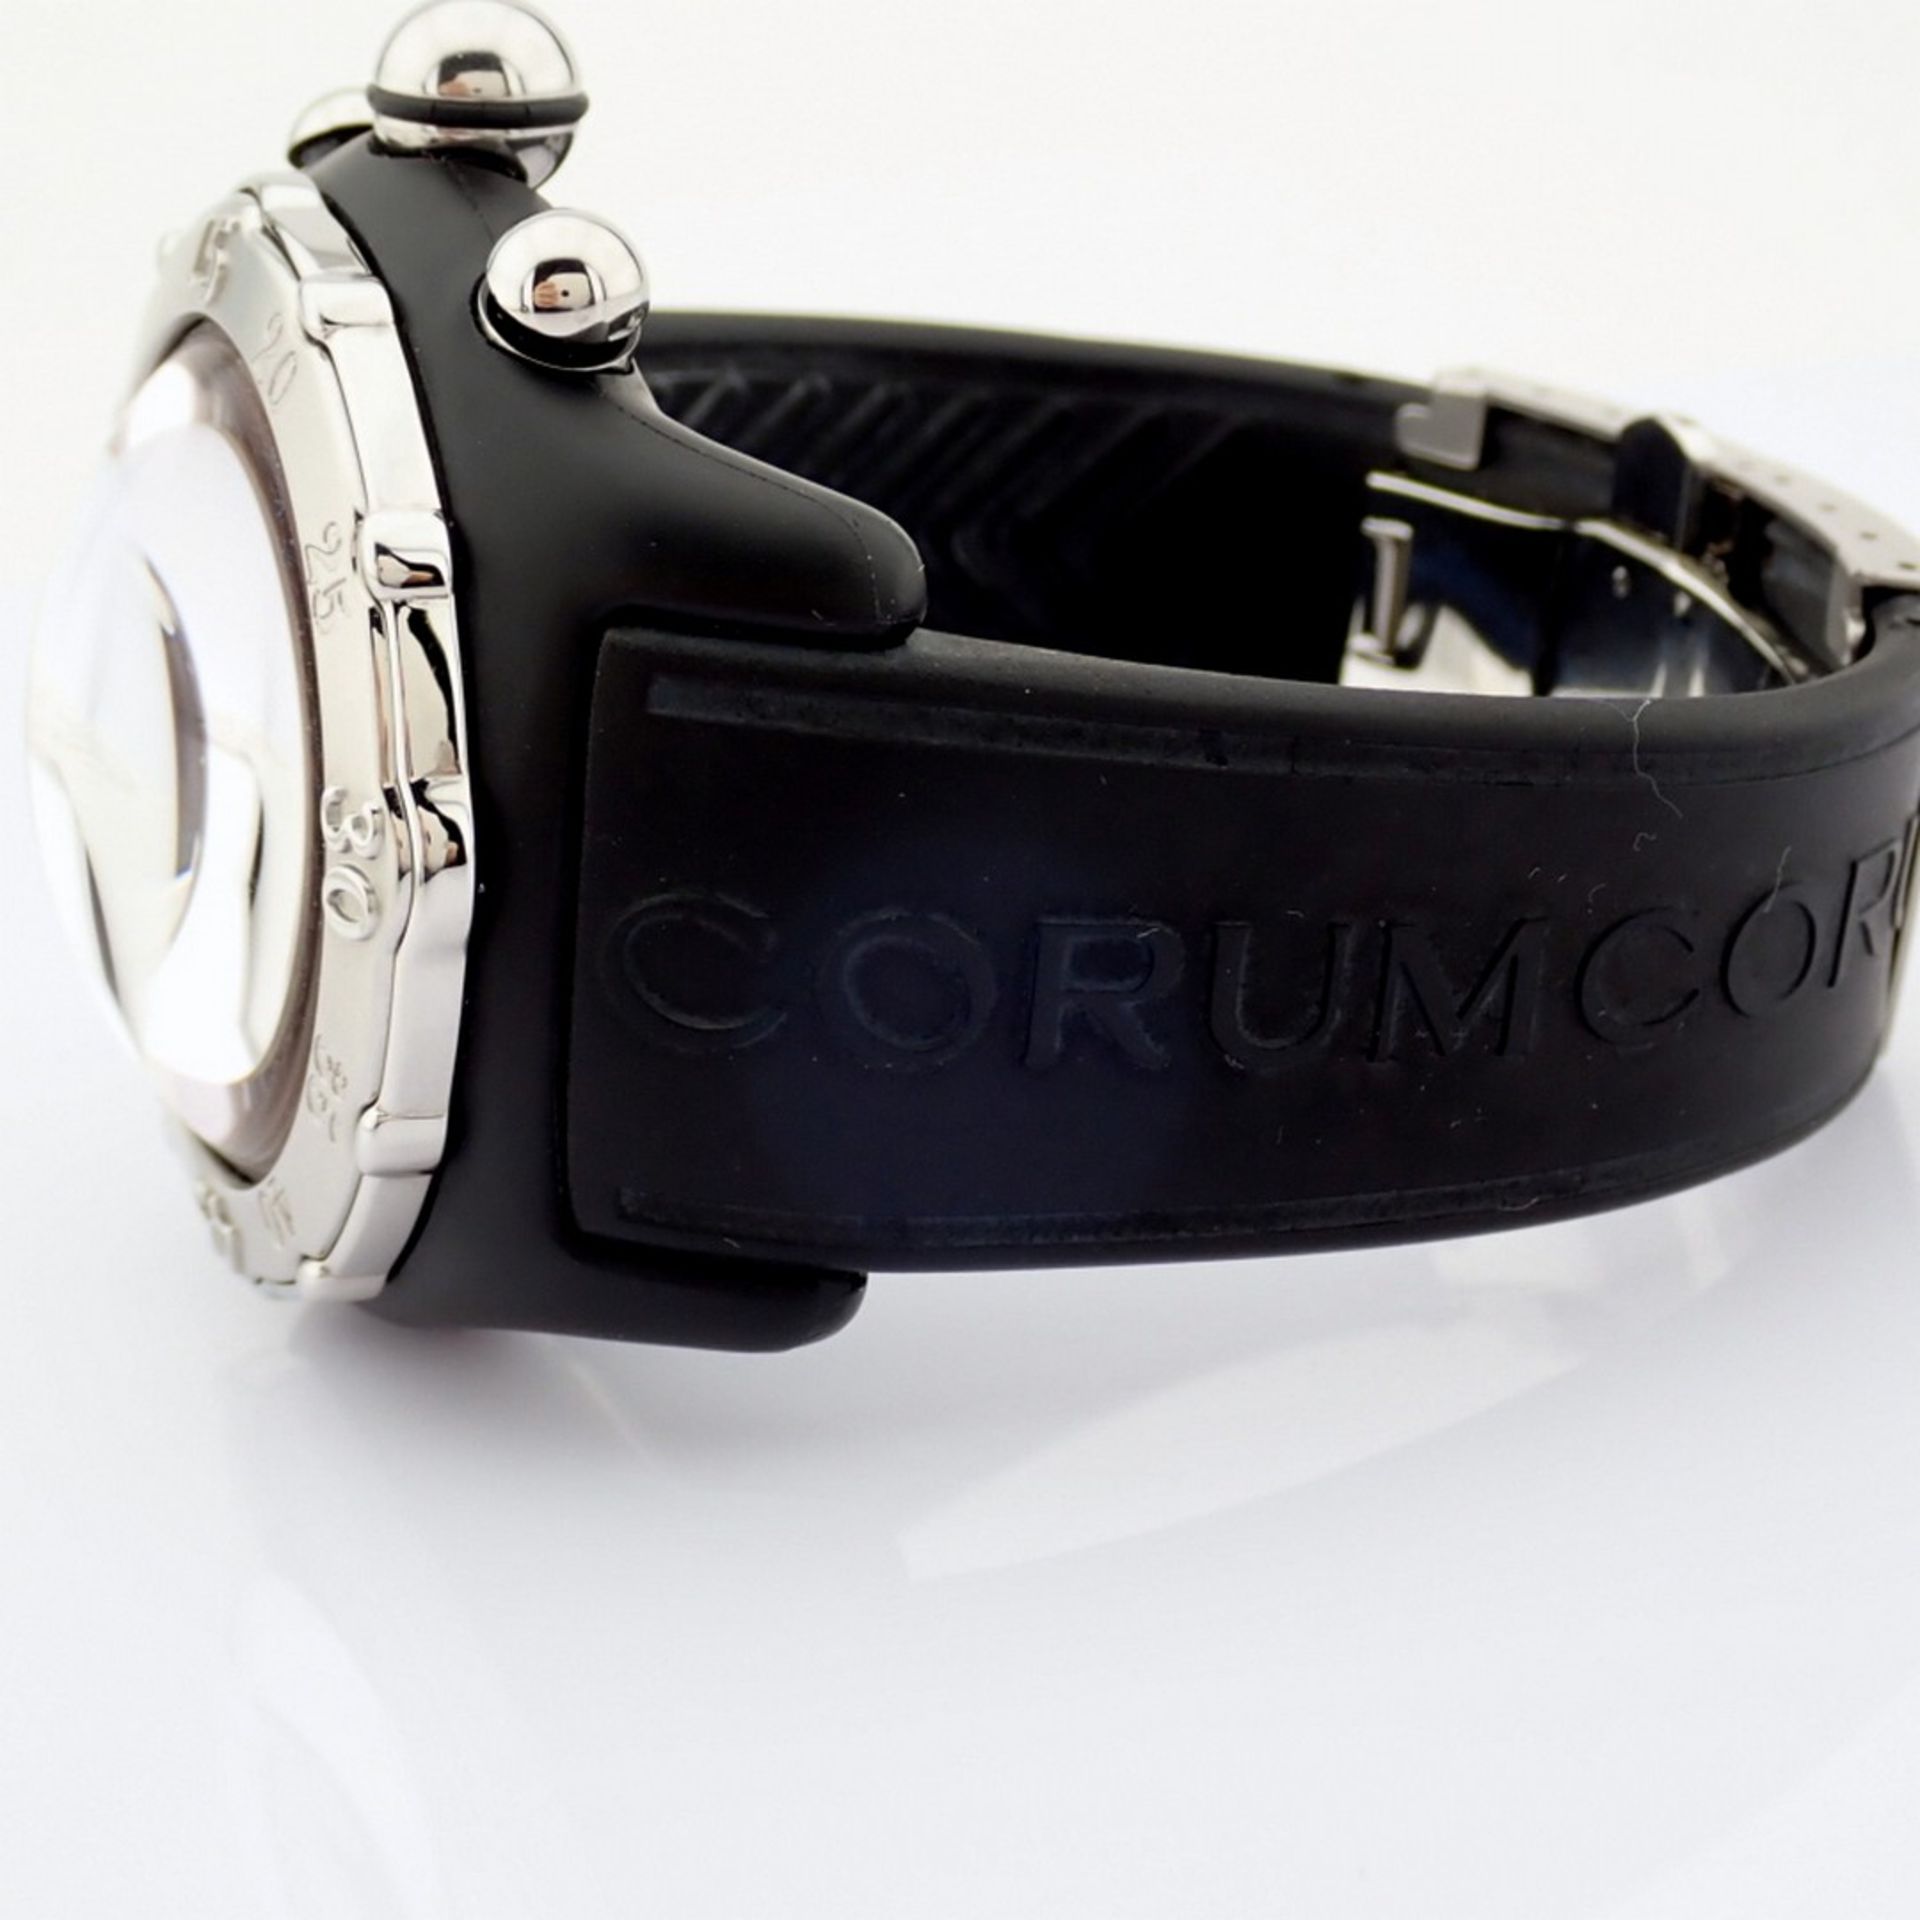 Corum / Midnight Chronograph Diver Taucher - Gentlemen's Steel Wristwatch - Image 12 of 12